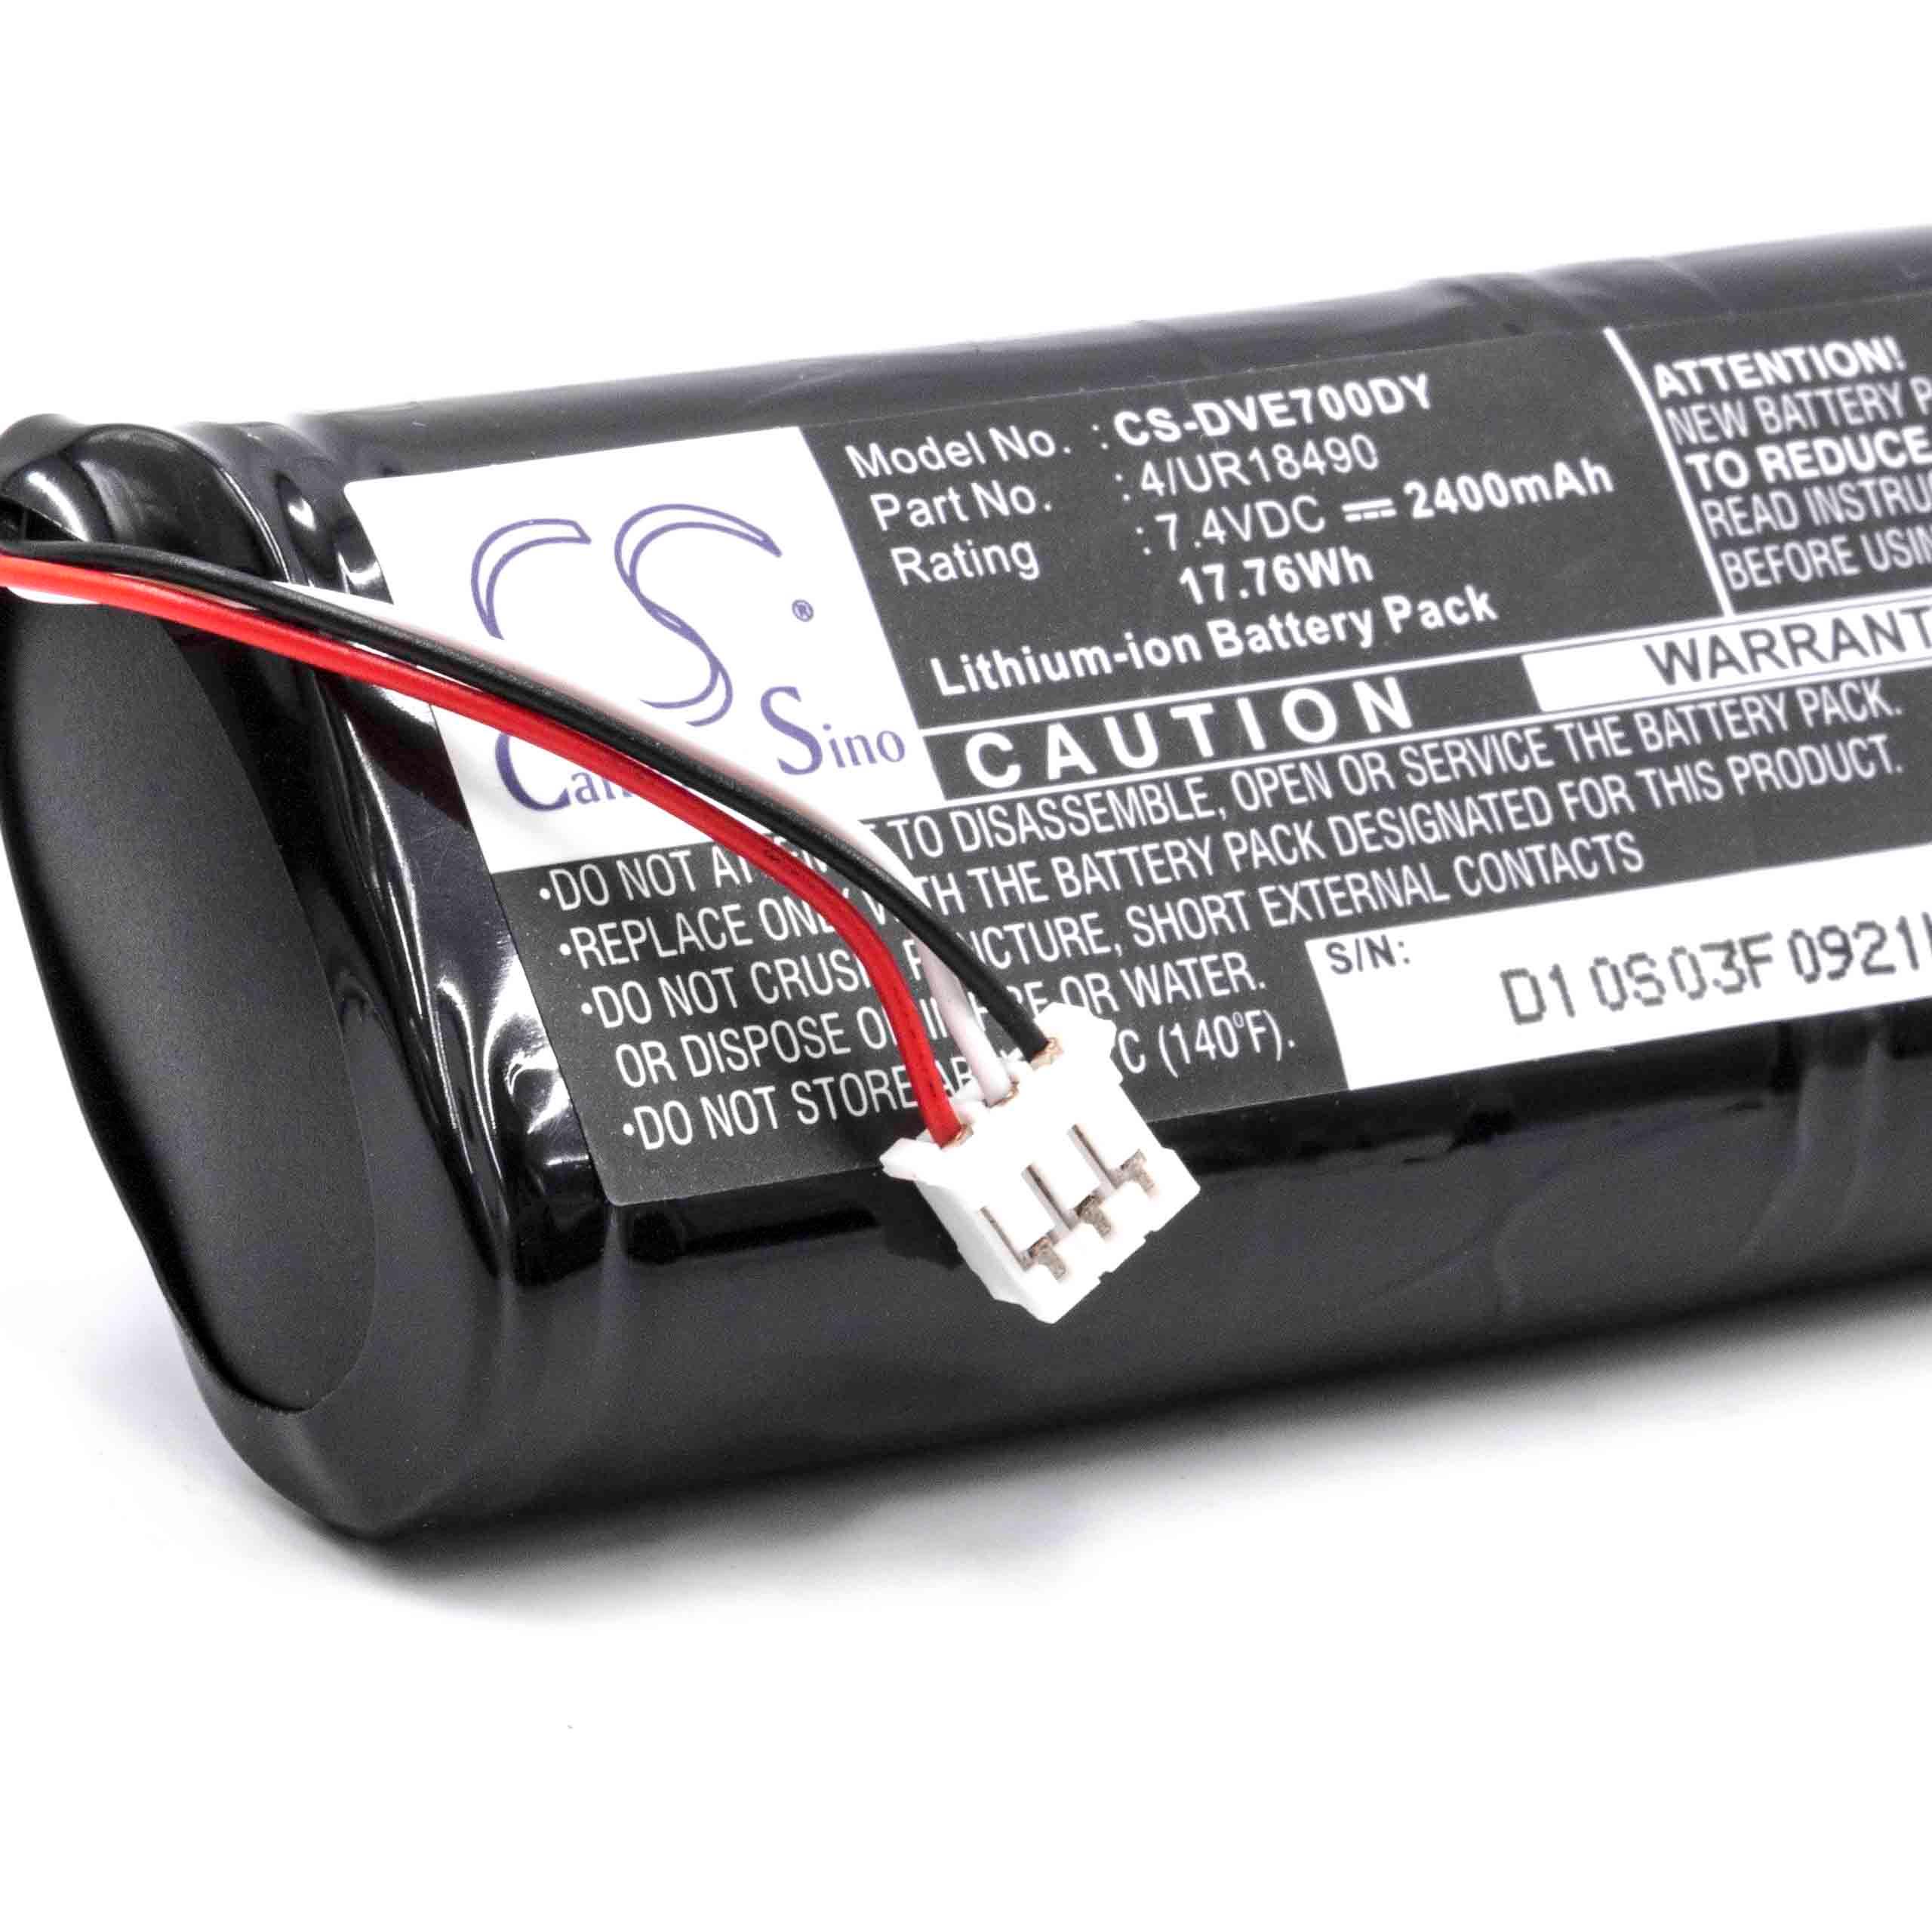 Batterie remplace Sony 4/UR18490 pour lecteur portable de DVD - 2400mAh 7,4V Li-ion